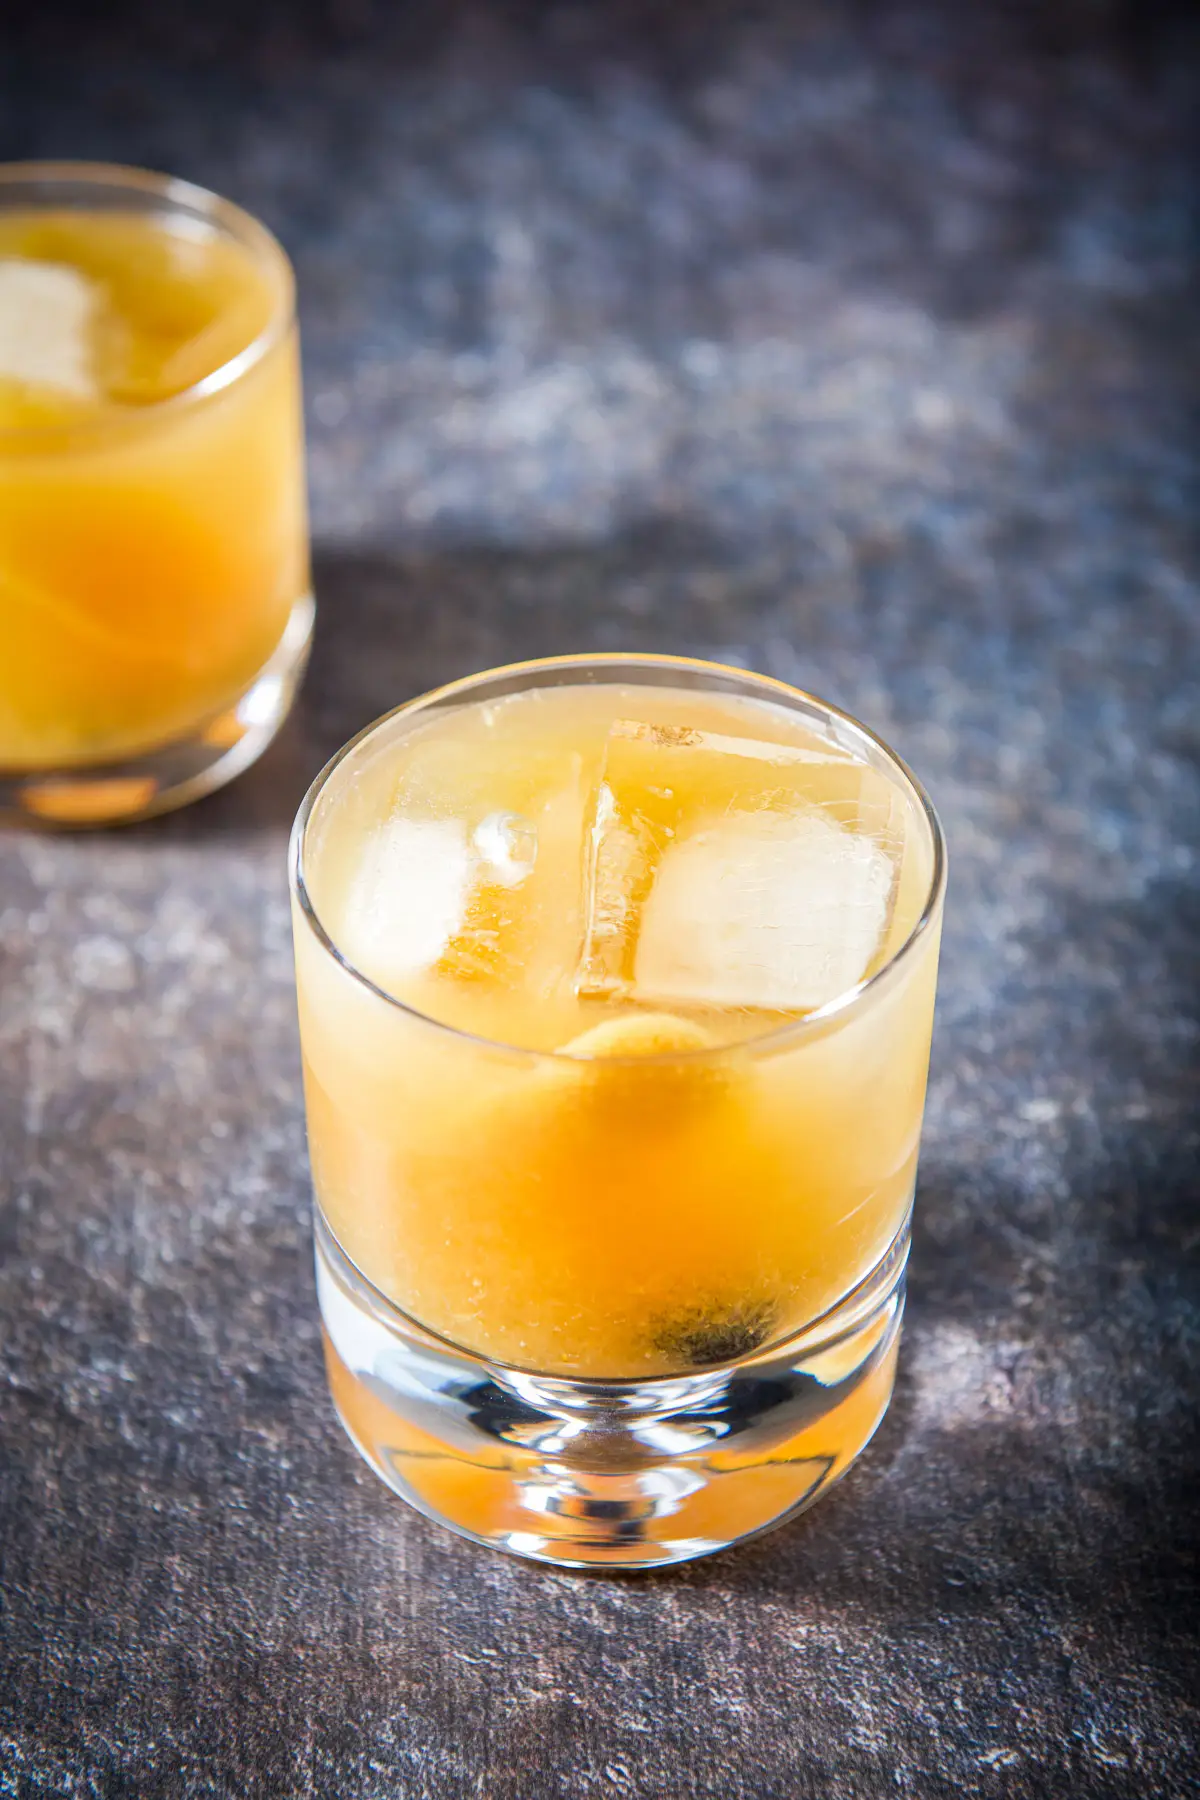 Big ice cubes in the amaretto drink with orange zest garnish